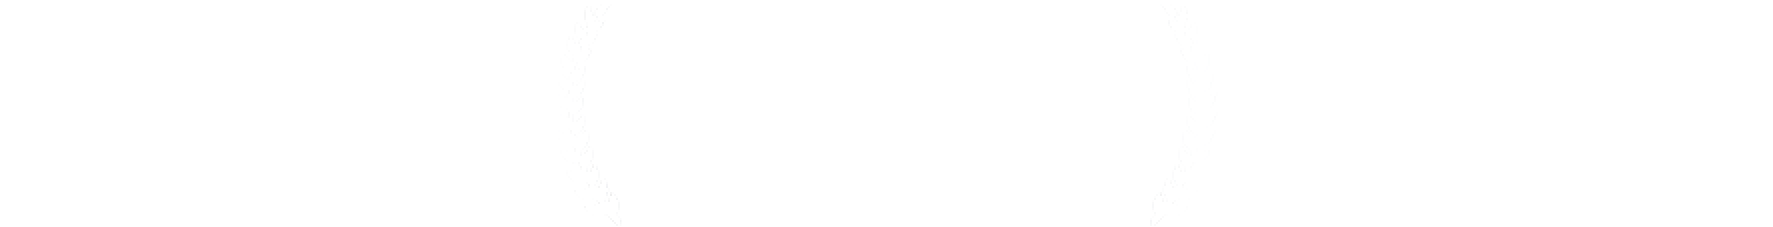 観客賞/Audience Choice Prize